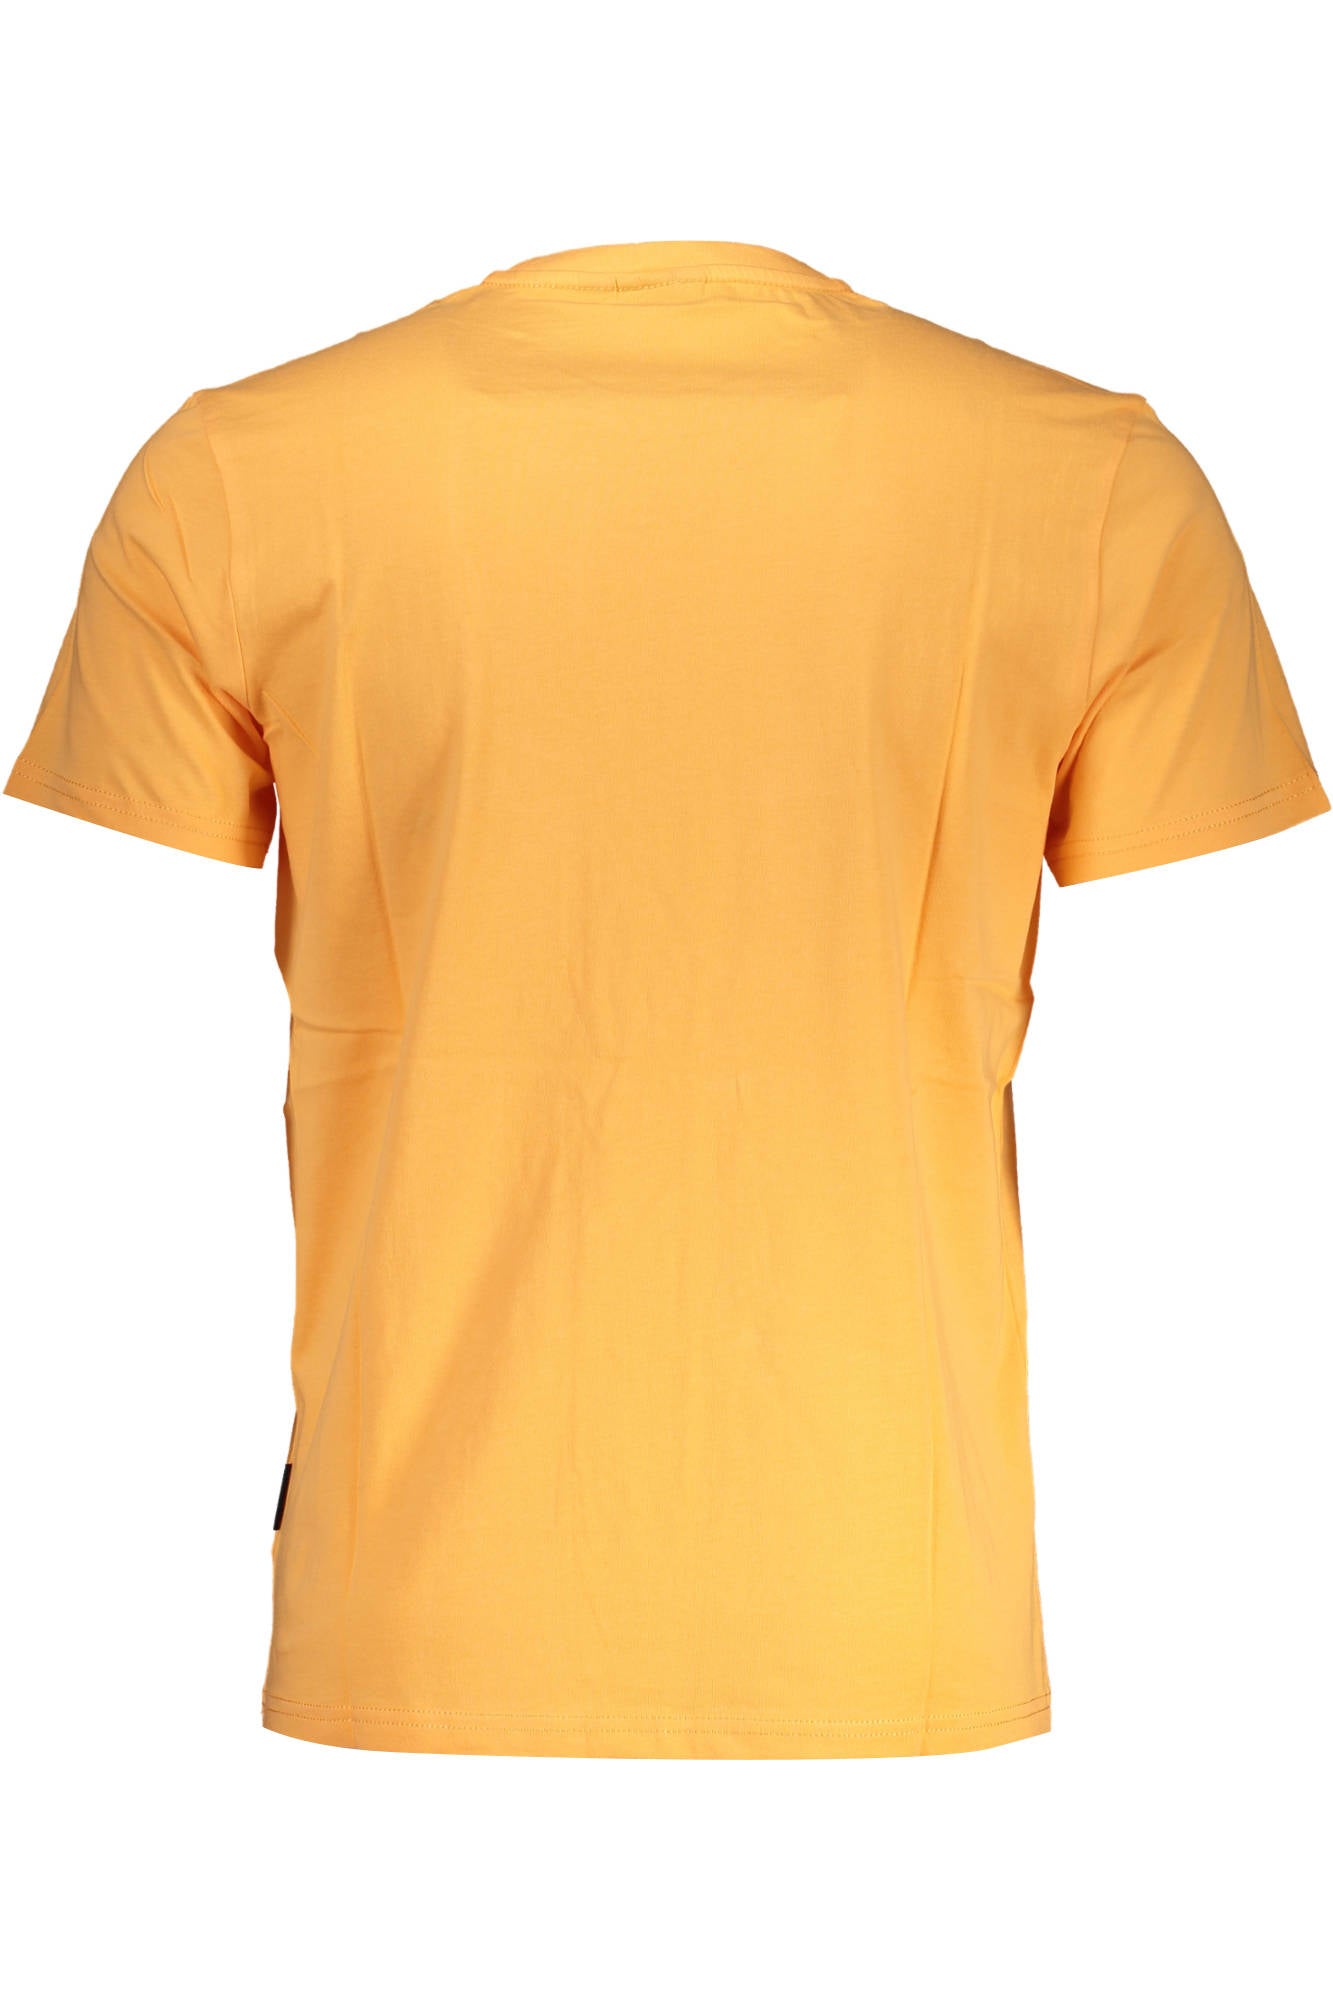 Napapijri Orange Cotton T-Shirt - Fizigo